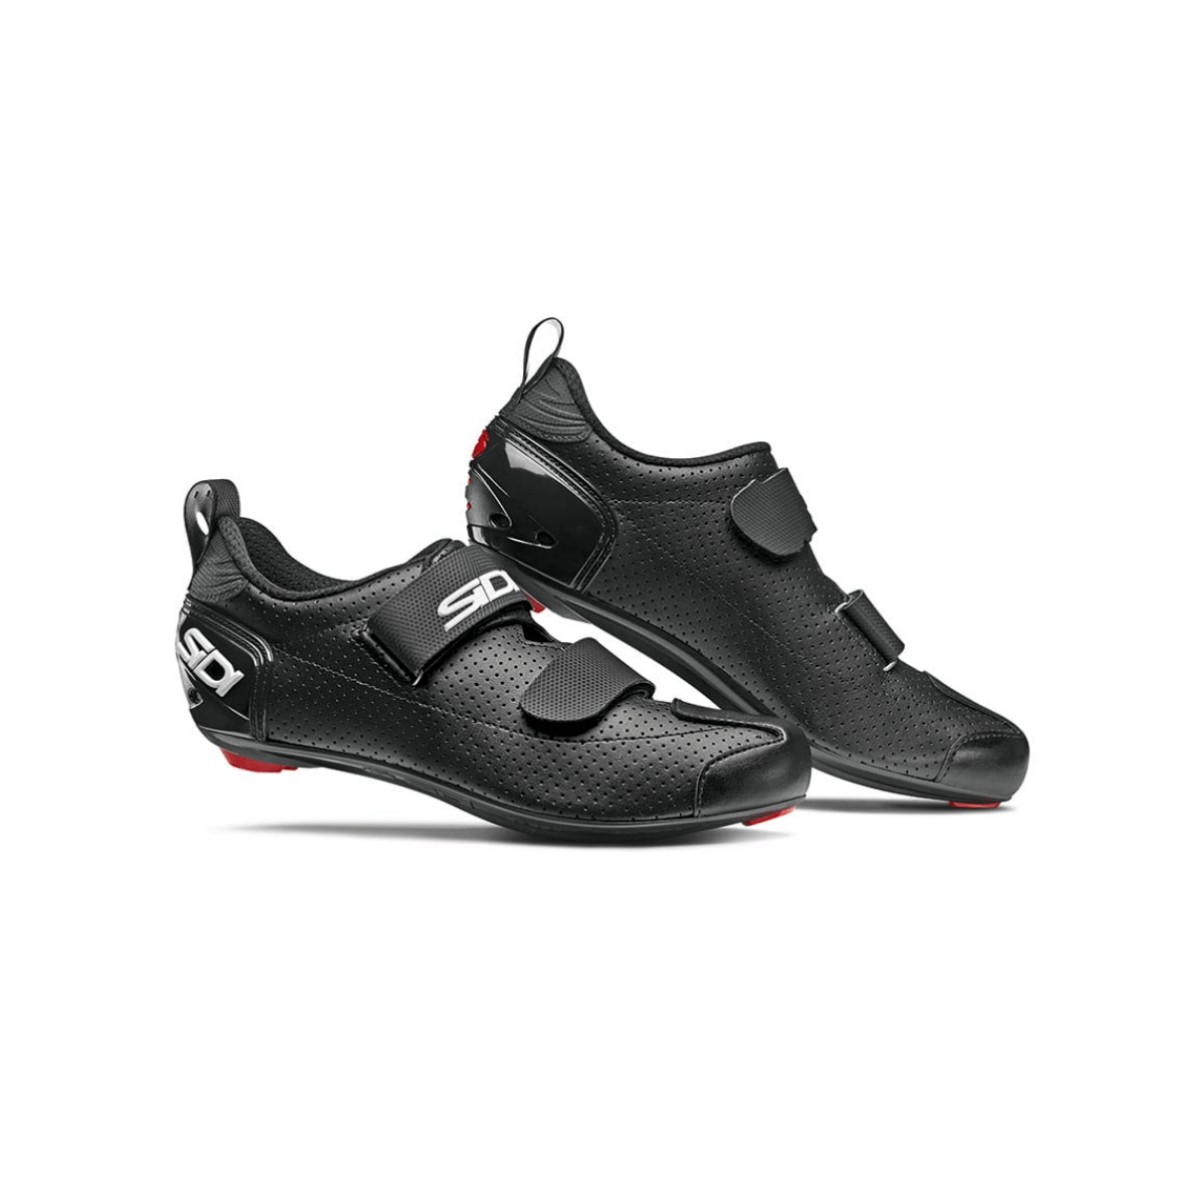 Sidi T5 Air Carbon Schwarz Weiß Triathlon Schuhe, Größe 47 - EUR